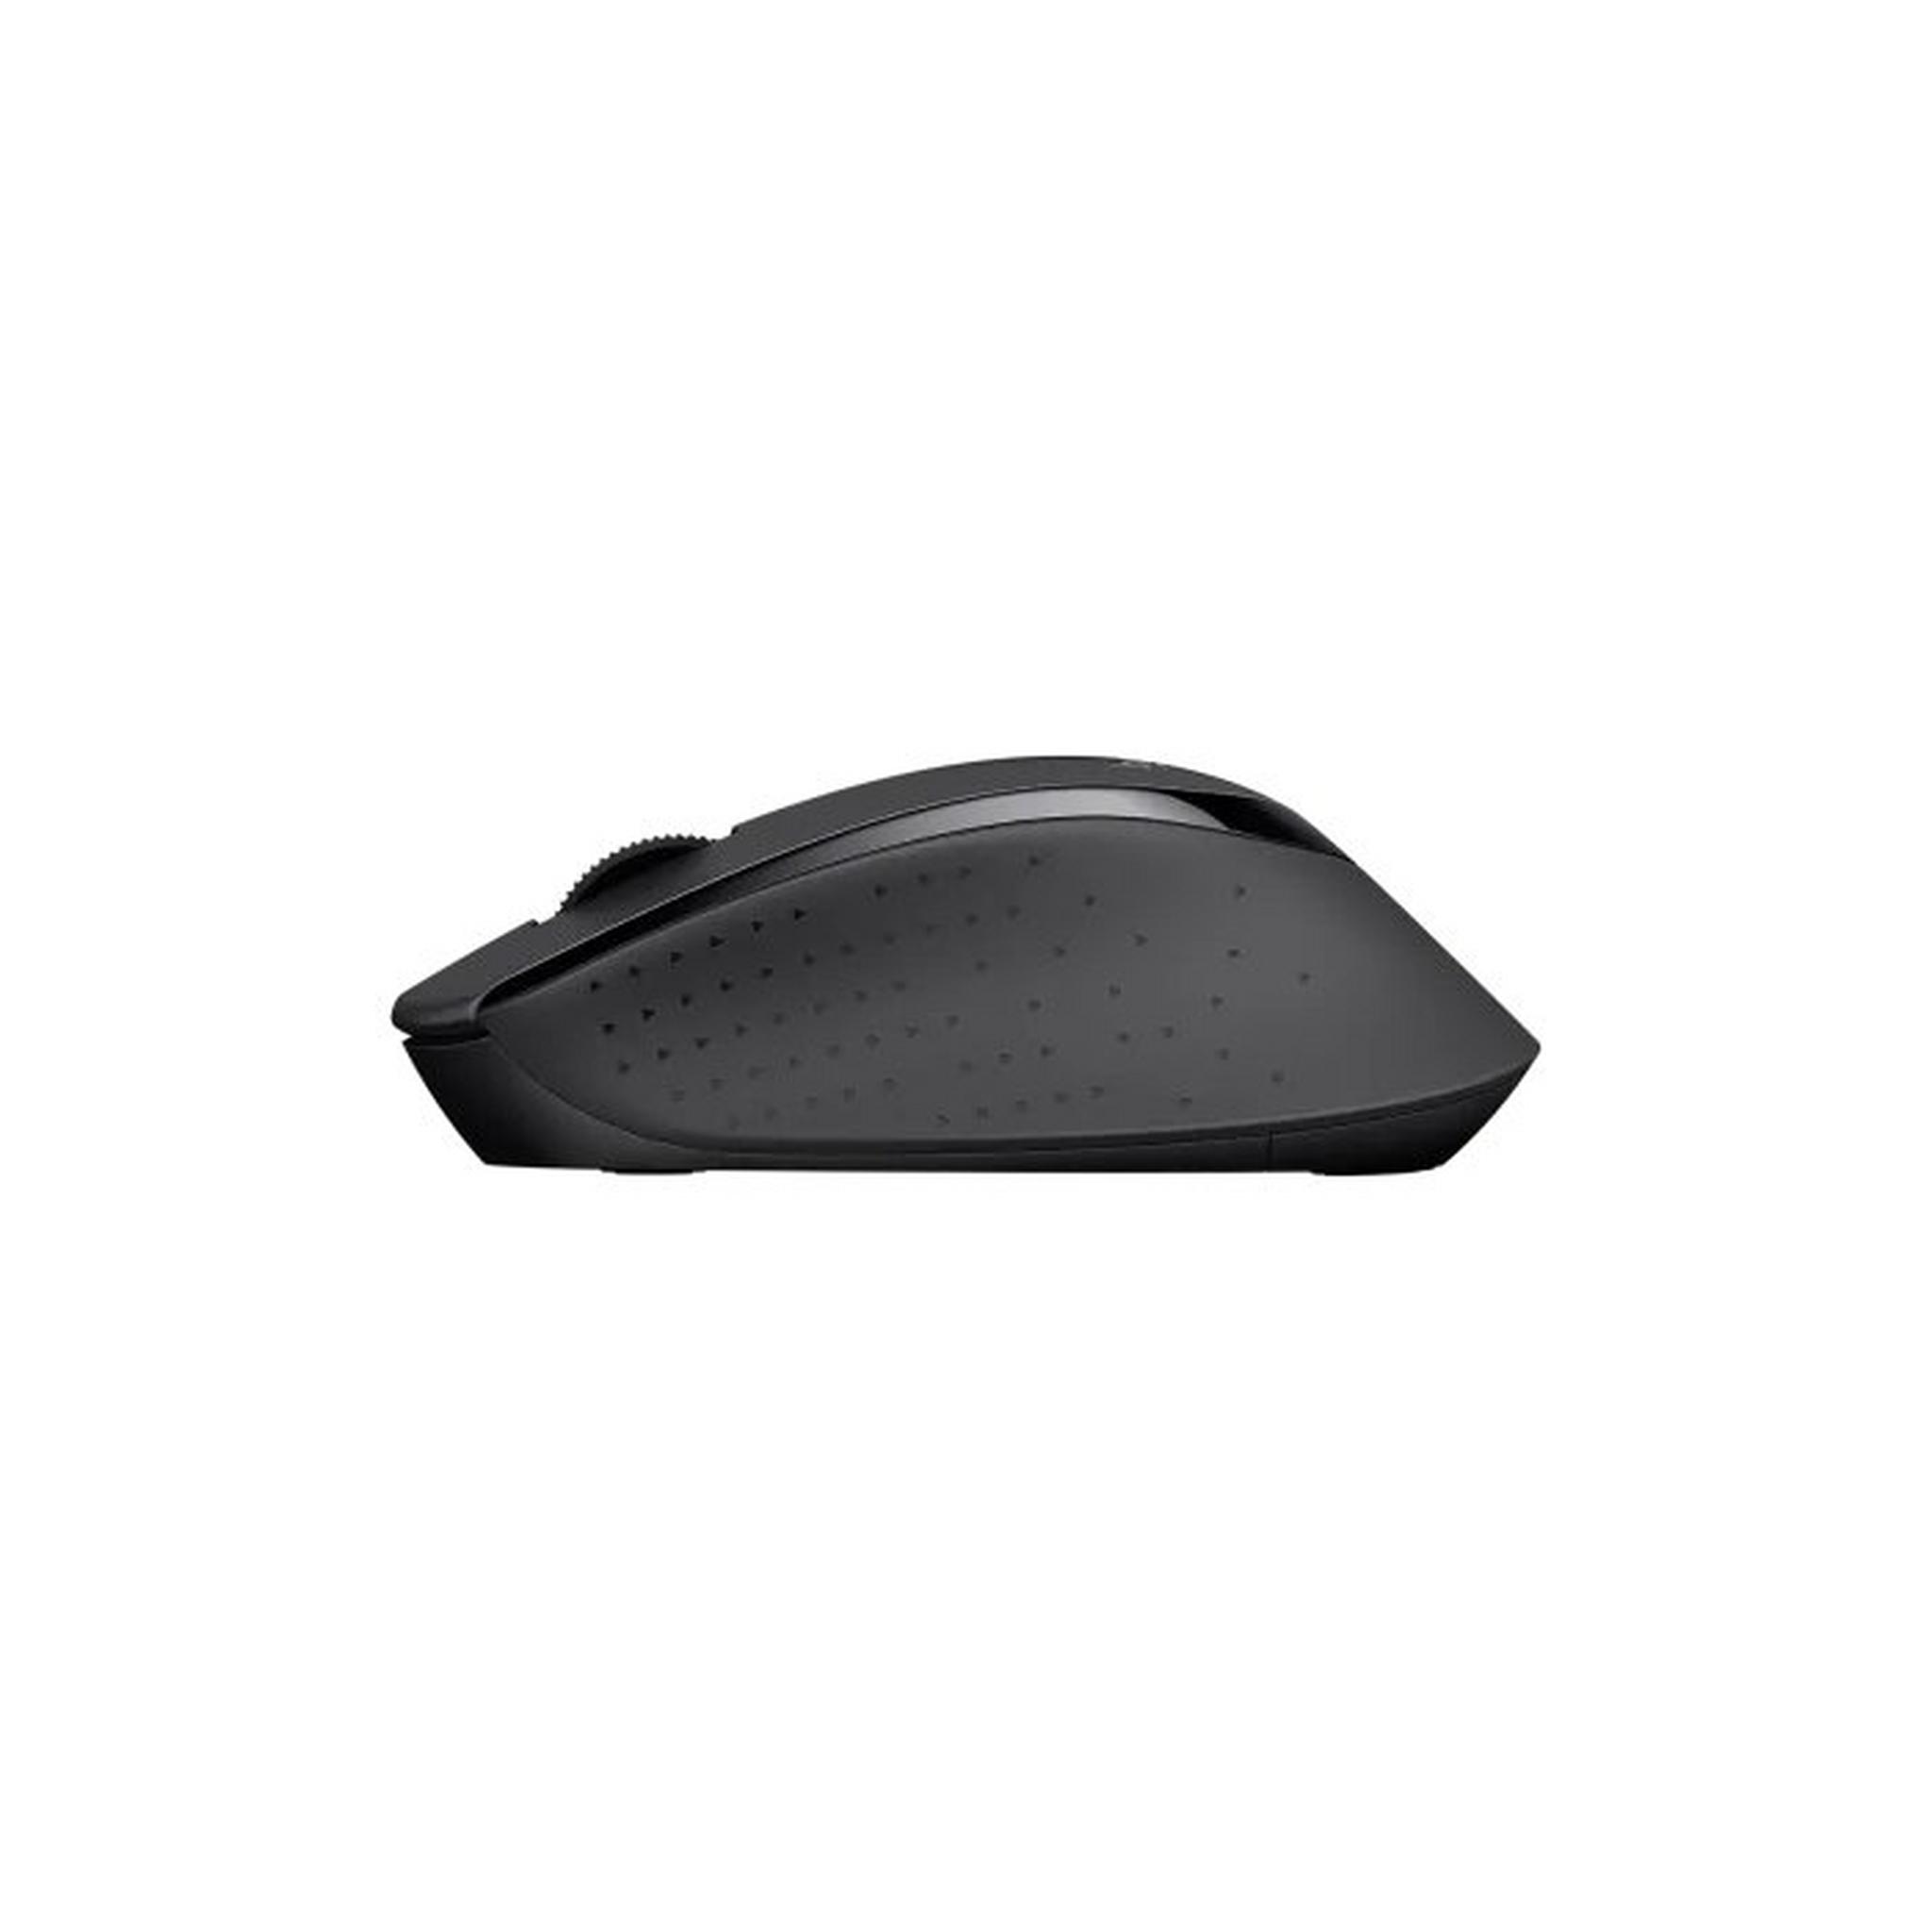 Logitech Wireless Keyboard and Mouse Combo, MK345 - Black